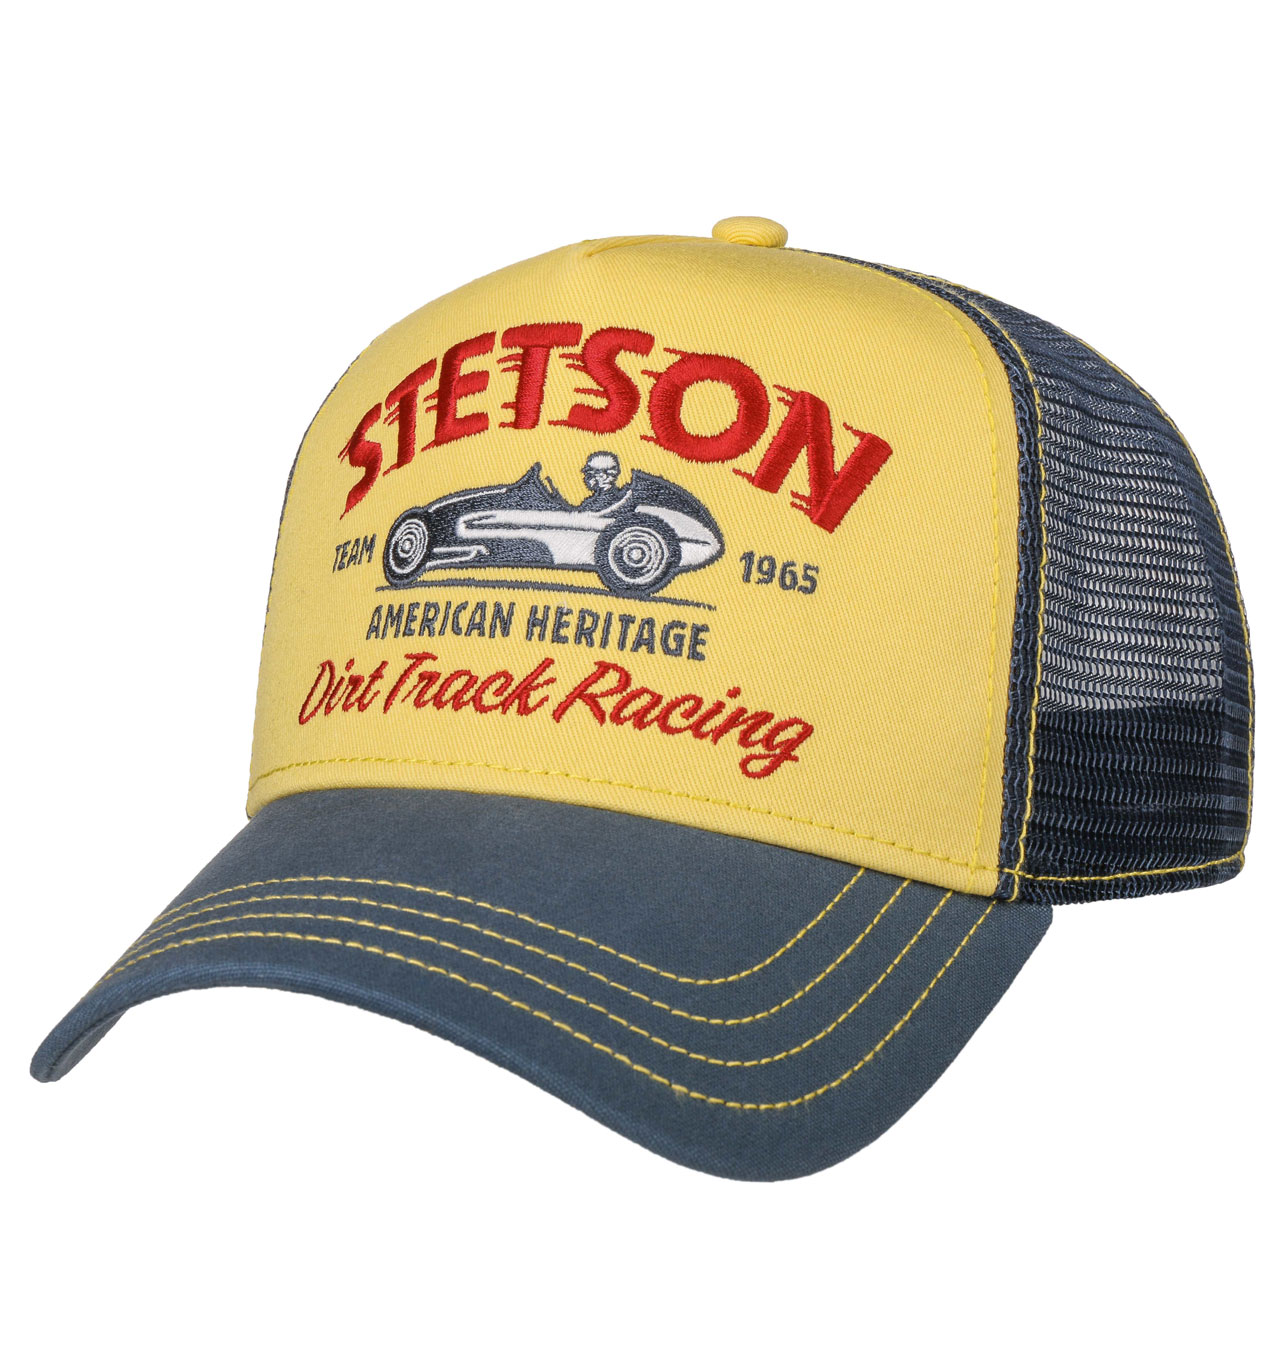 Stetson---Dirt-Track-Racing-Trucker-Cap